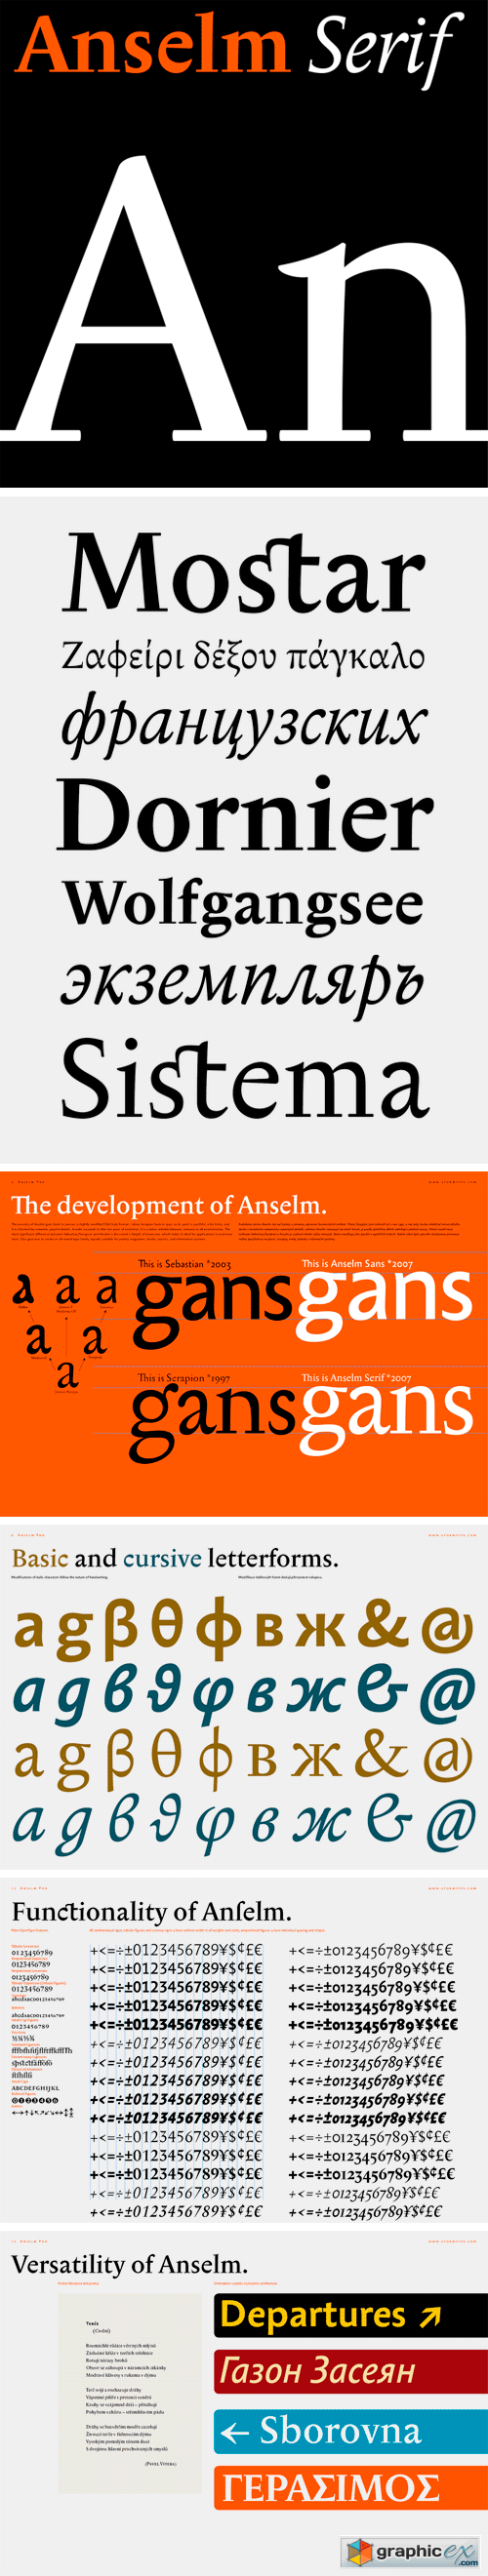 Anselm Serif Font Family